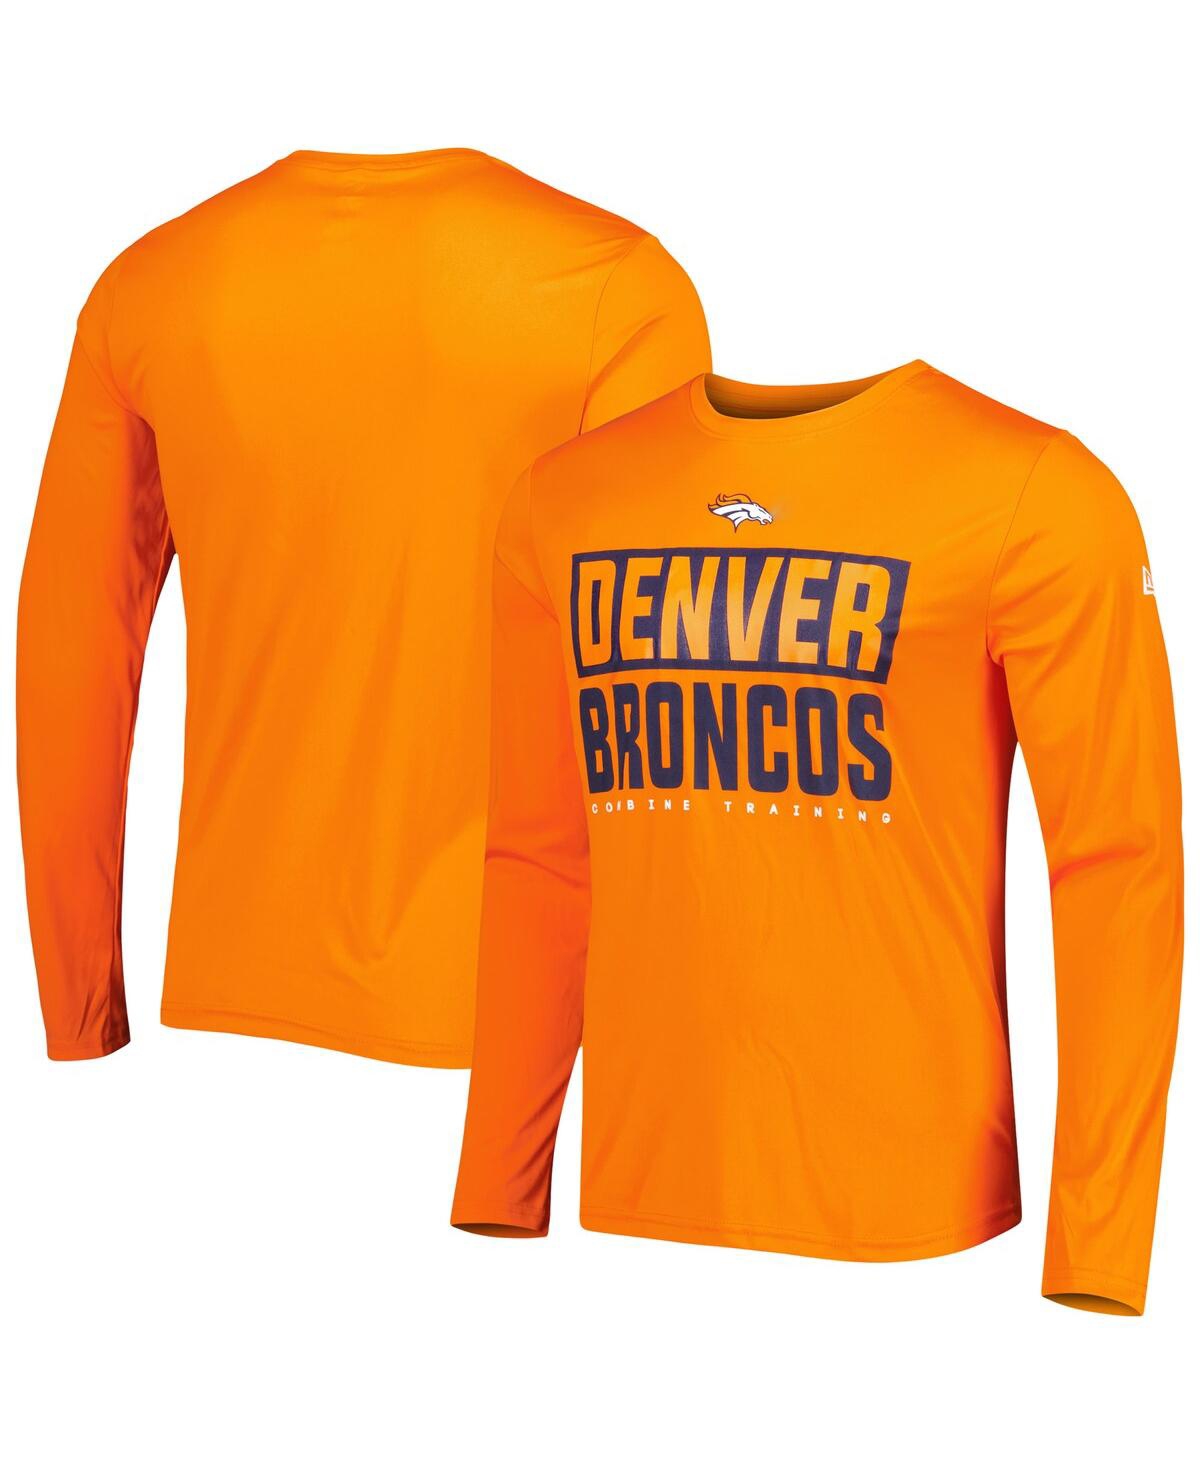 Shop New Era Men's  Orange Denver Broncos Combine Authentic Offsides Long Sleeve T-shirt